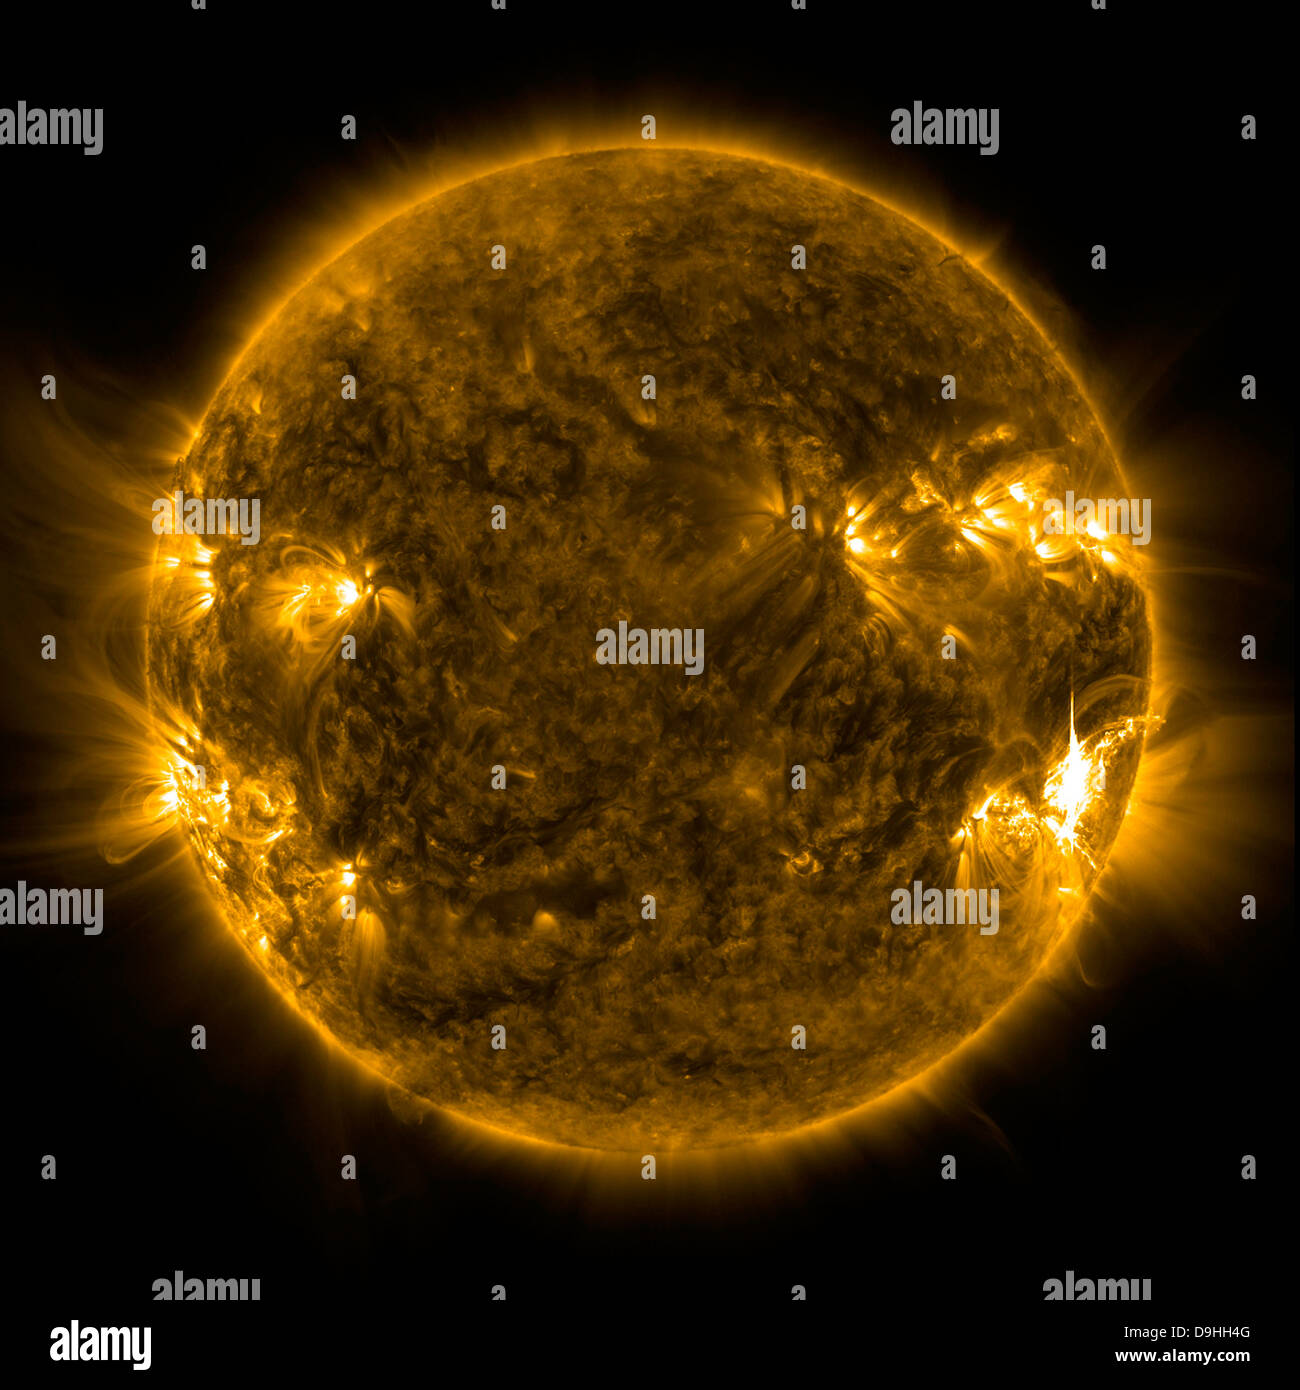 Solar activity on the Sun. Stock Photo